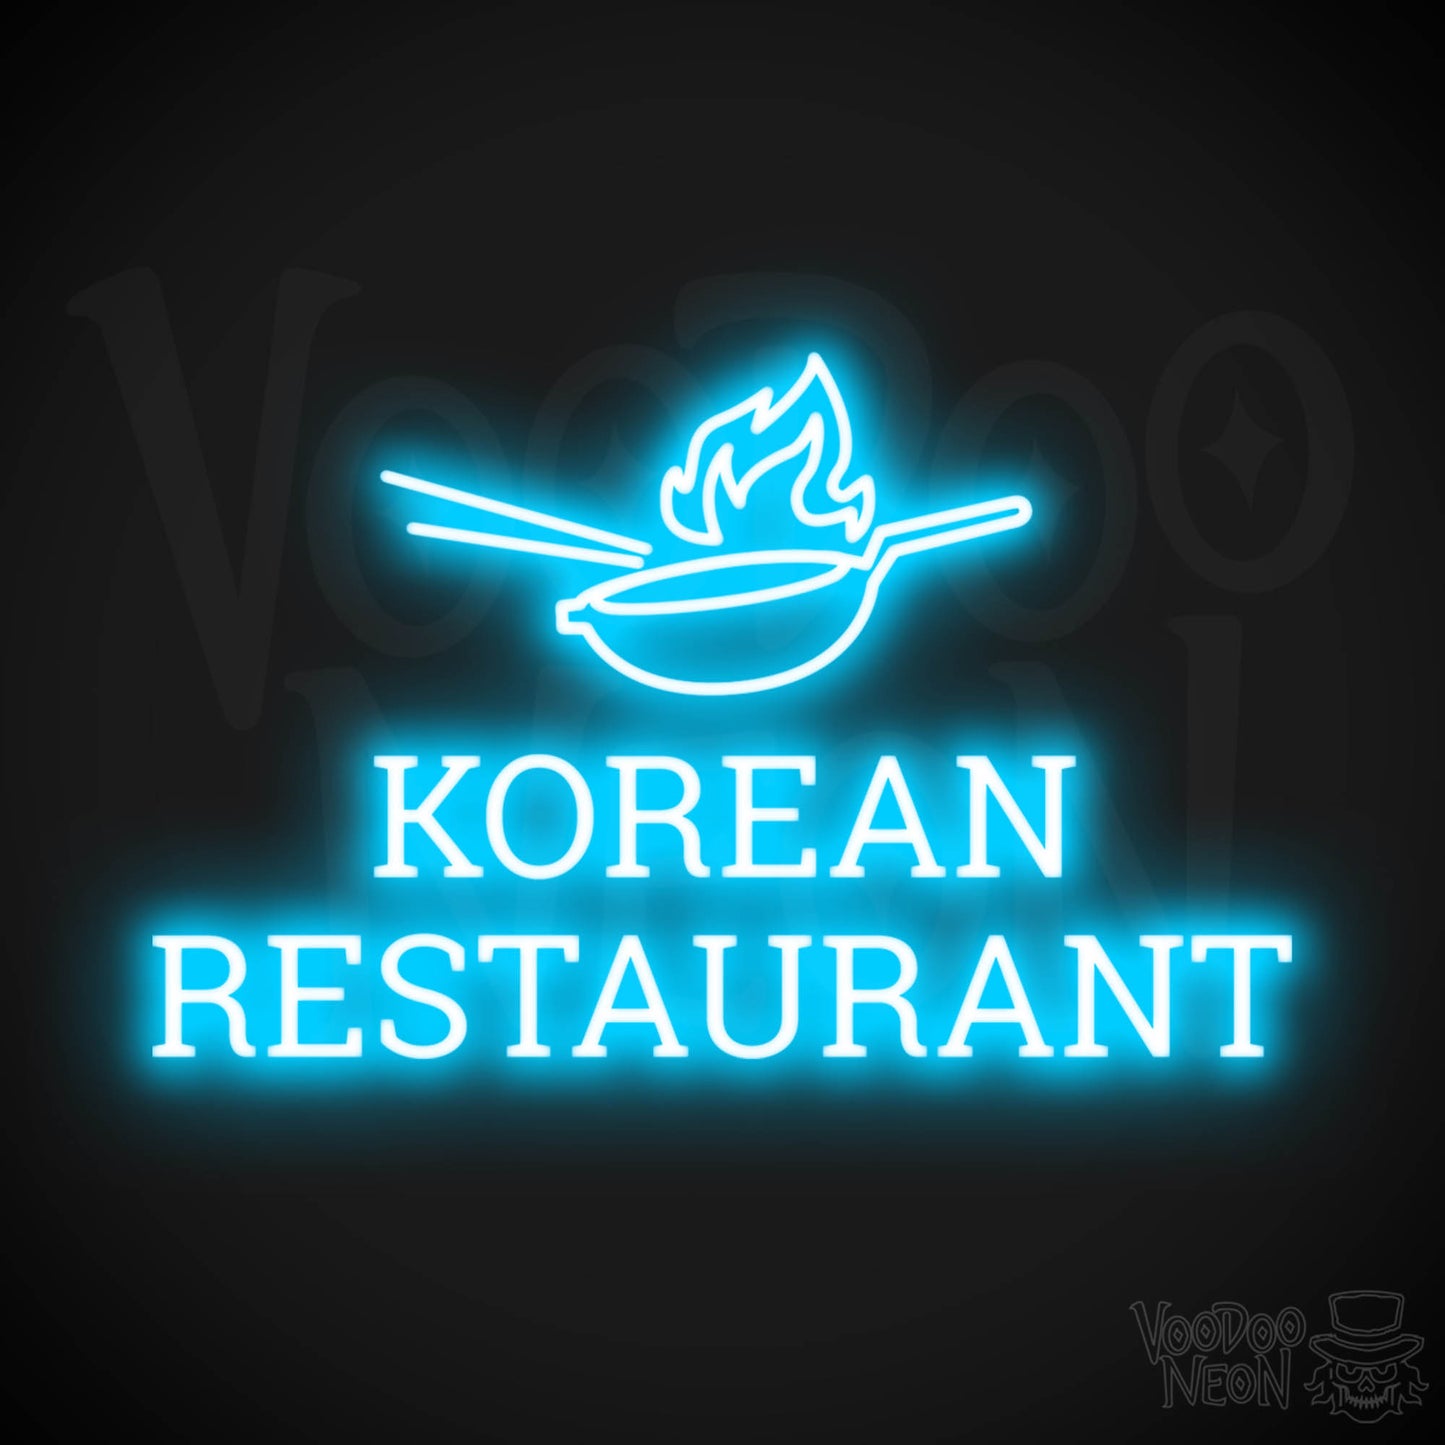 Korean Restaurant LED Neon - Dark Blue